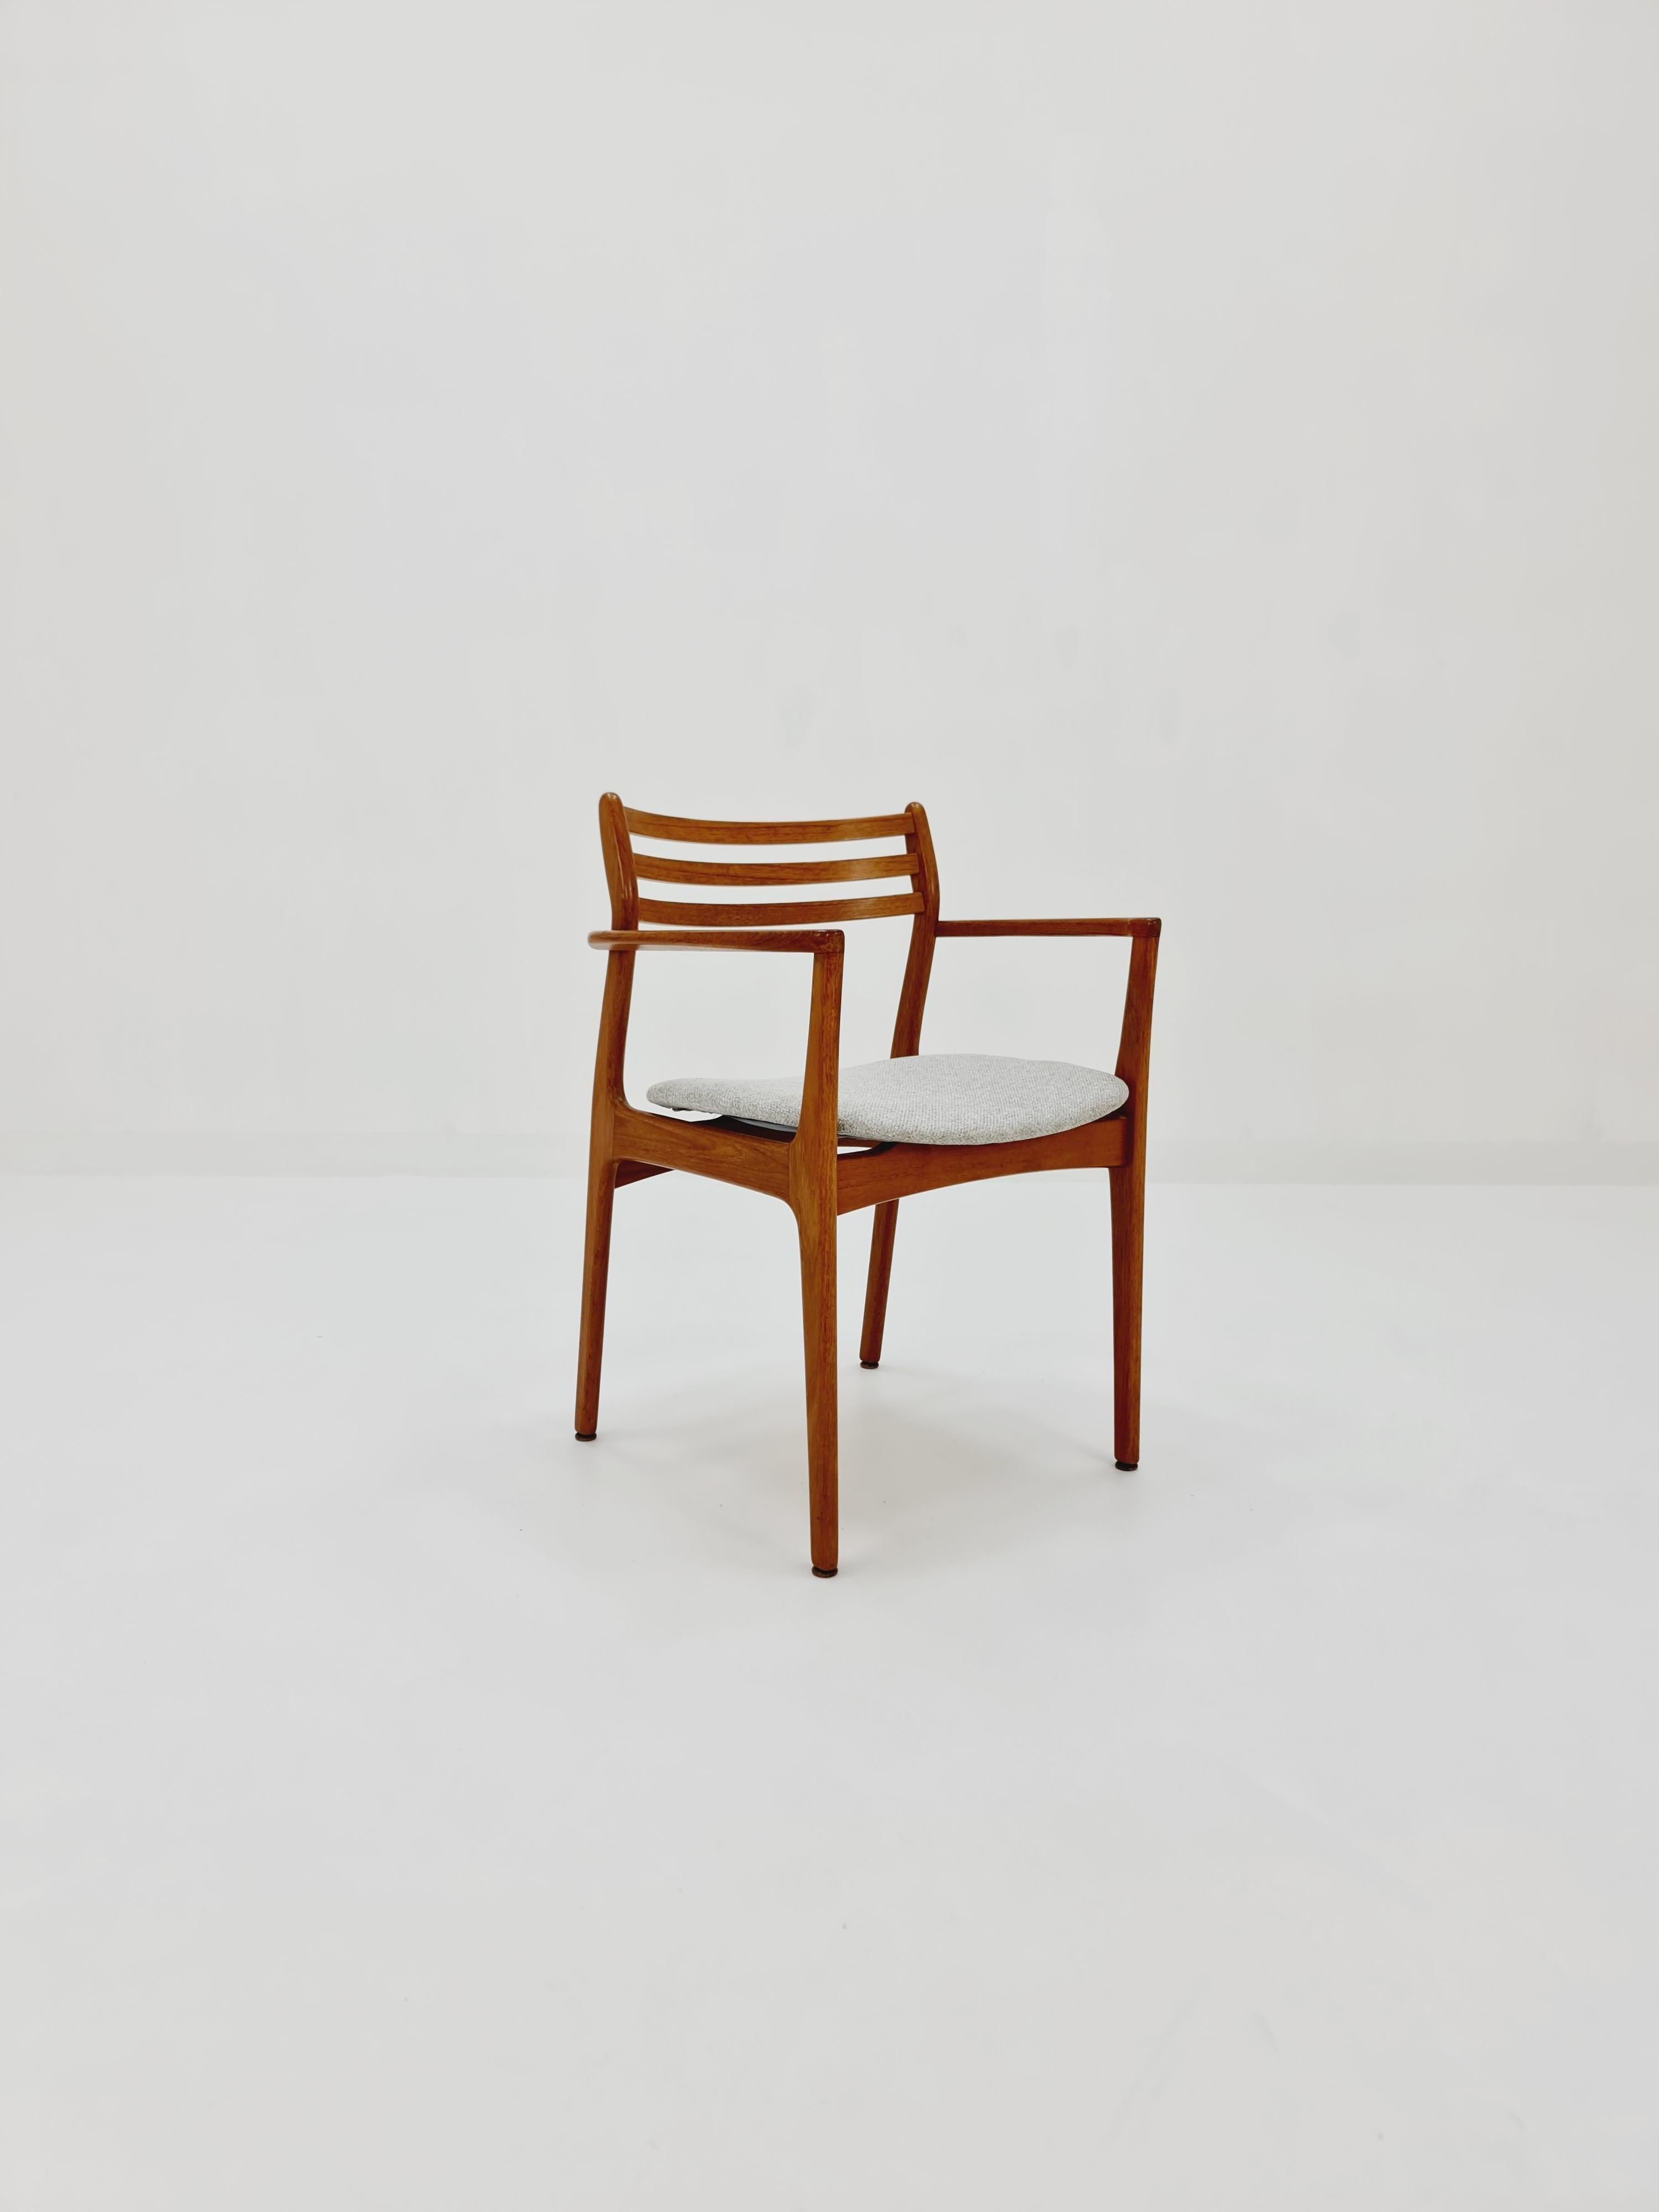 Dänisch Seltener Teakholz Sessel von P.E. Jorgensen für Farsø Møbelfabrik,  1960s

Der Stuhl ist in sehr gutem Zustand, aber wie bei allen Vintage-Artikeln sollten einige kleinere Gebrauchsspuren erwartet werden.

Hergestellt in Dänemark in den 60er